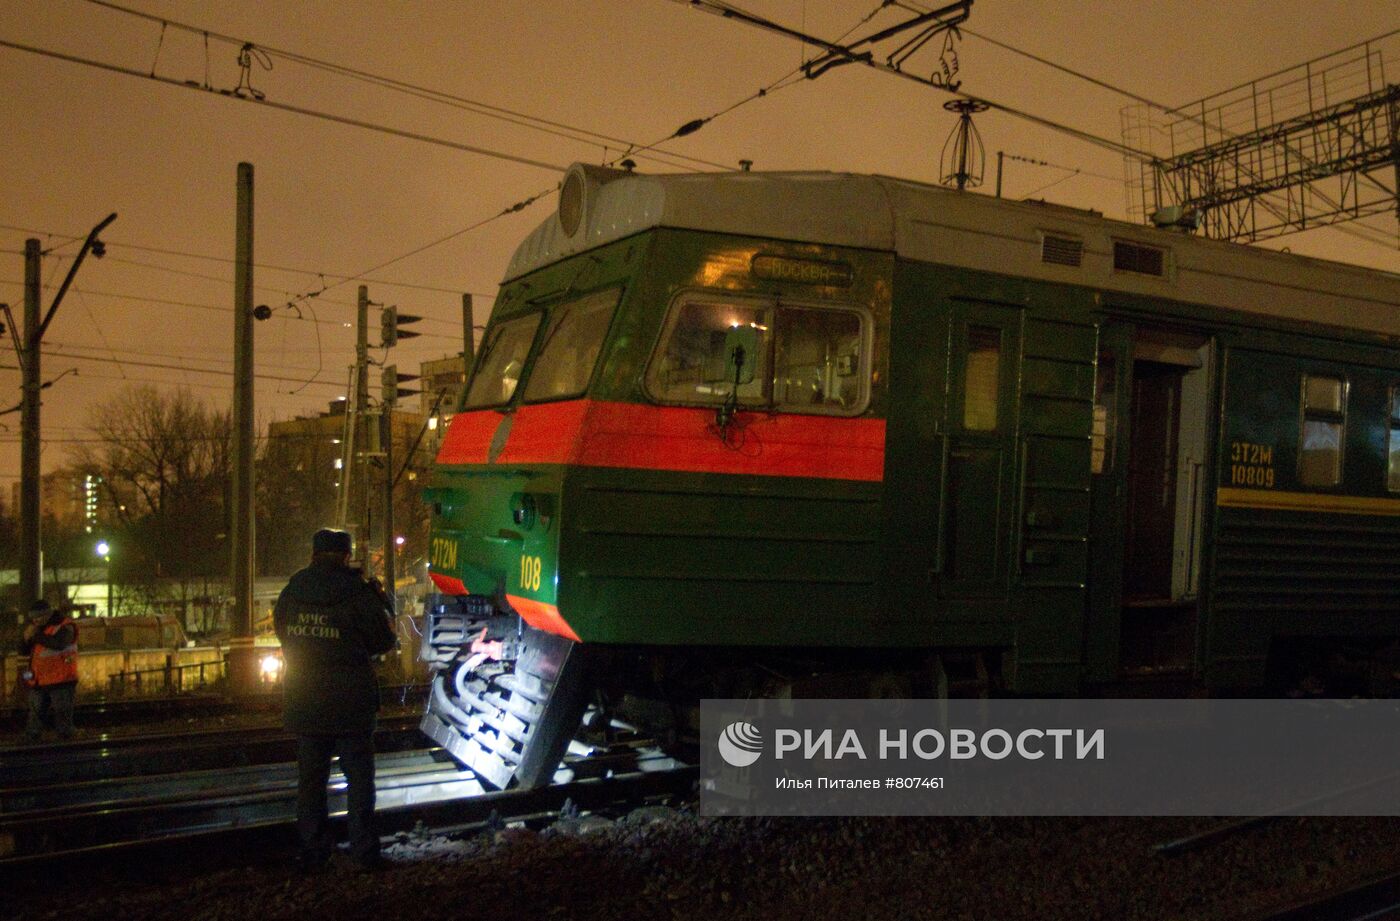 Три вагона электропоезда "Тверь - Москва" сошли с рельсов